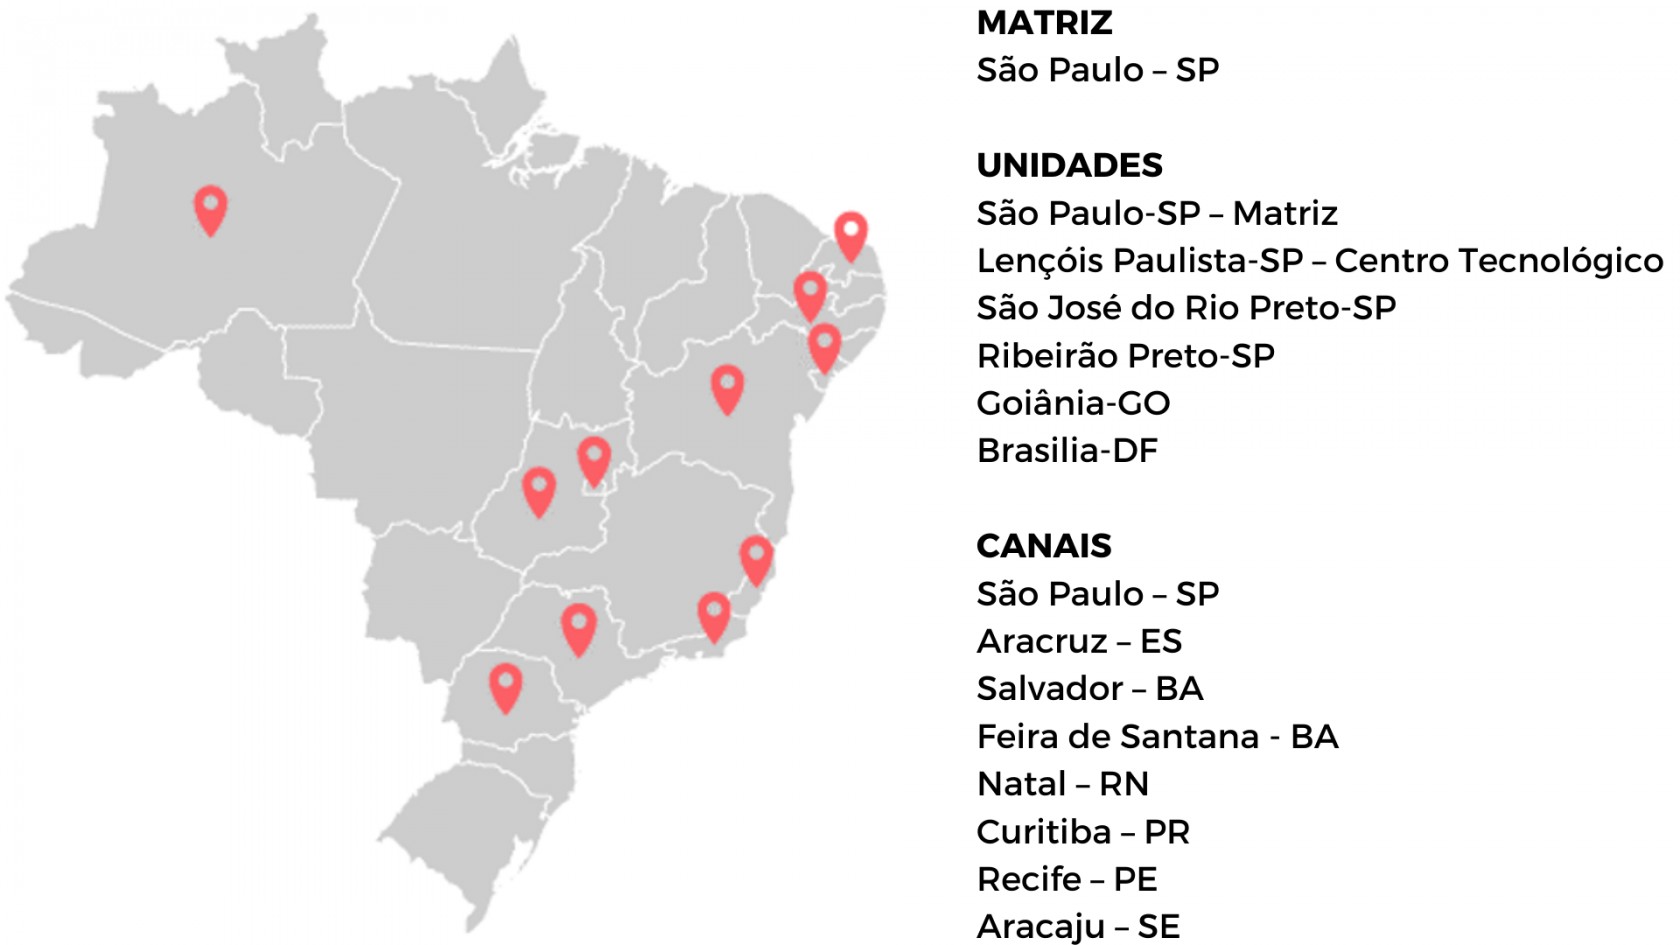 mapa do brasil mostrando as localizações dos canais